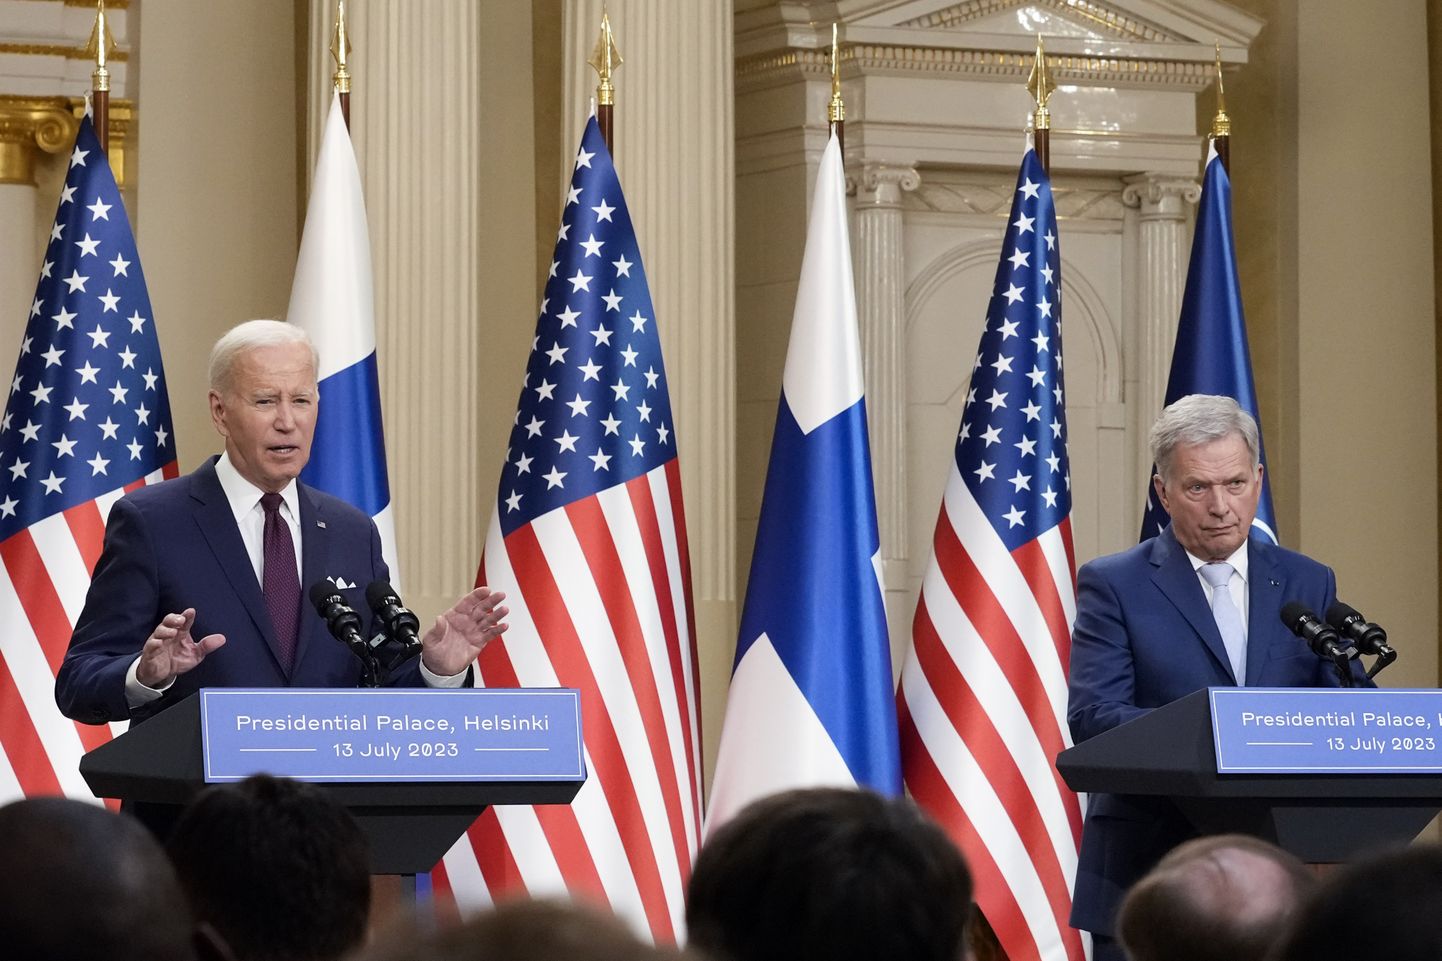 USA presidendi Joe Bideni ja Soome presidendi Sauli Niinistö ühine pressikonverents 13. juulil 2023 Helsingis presidendi palees